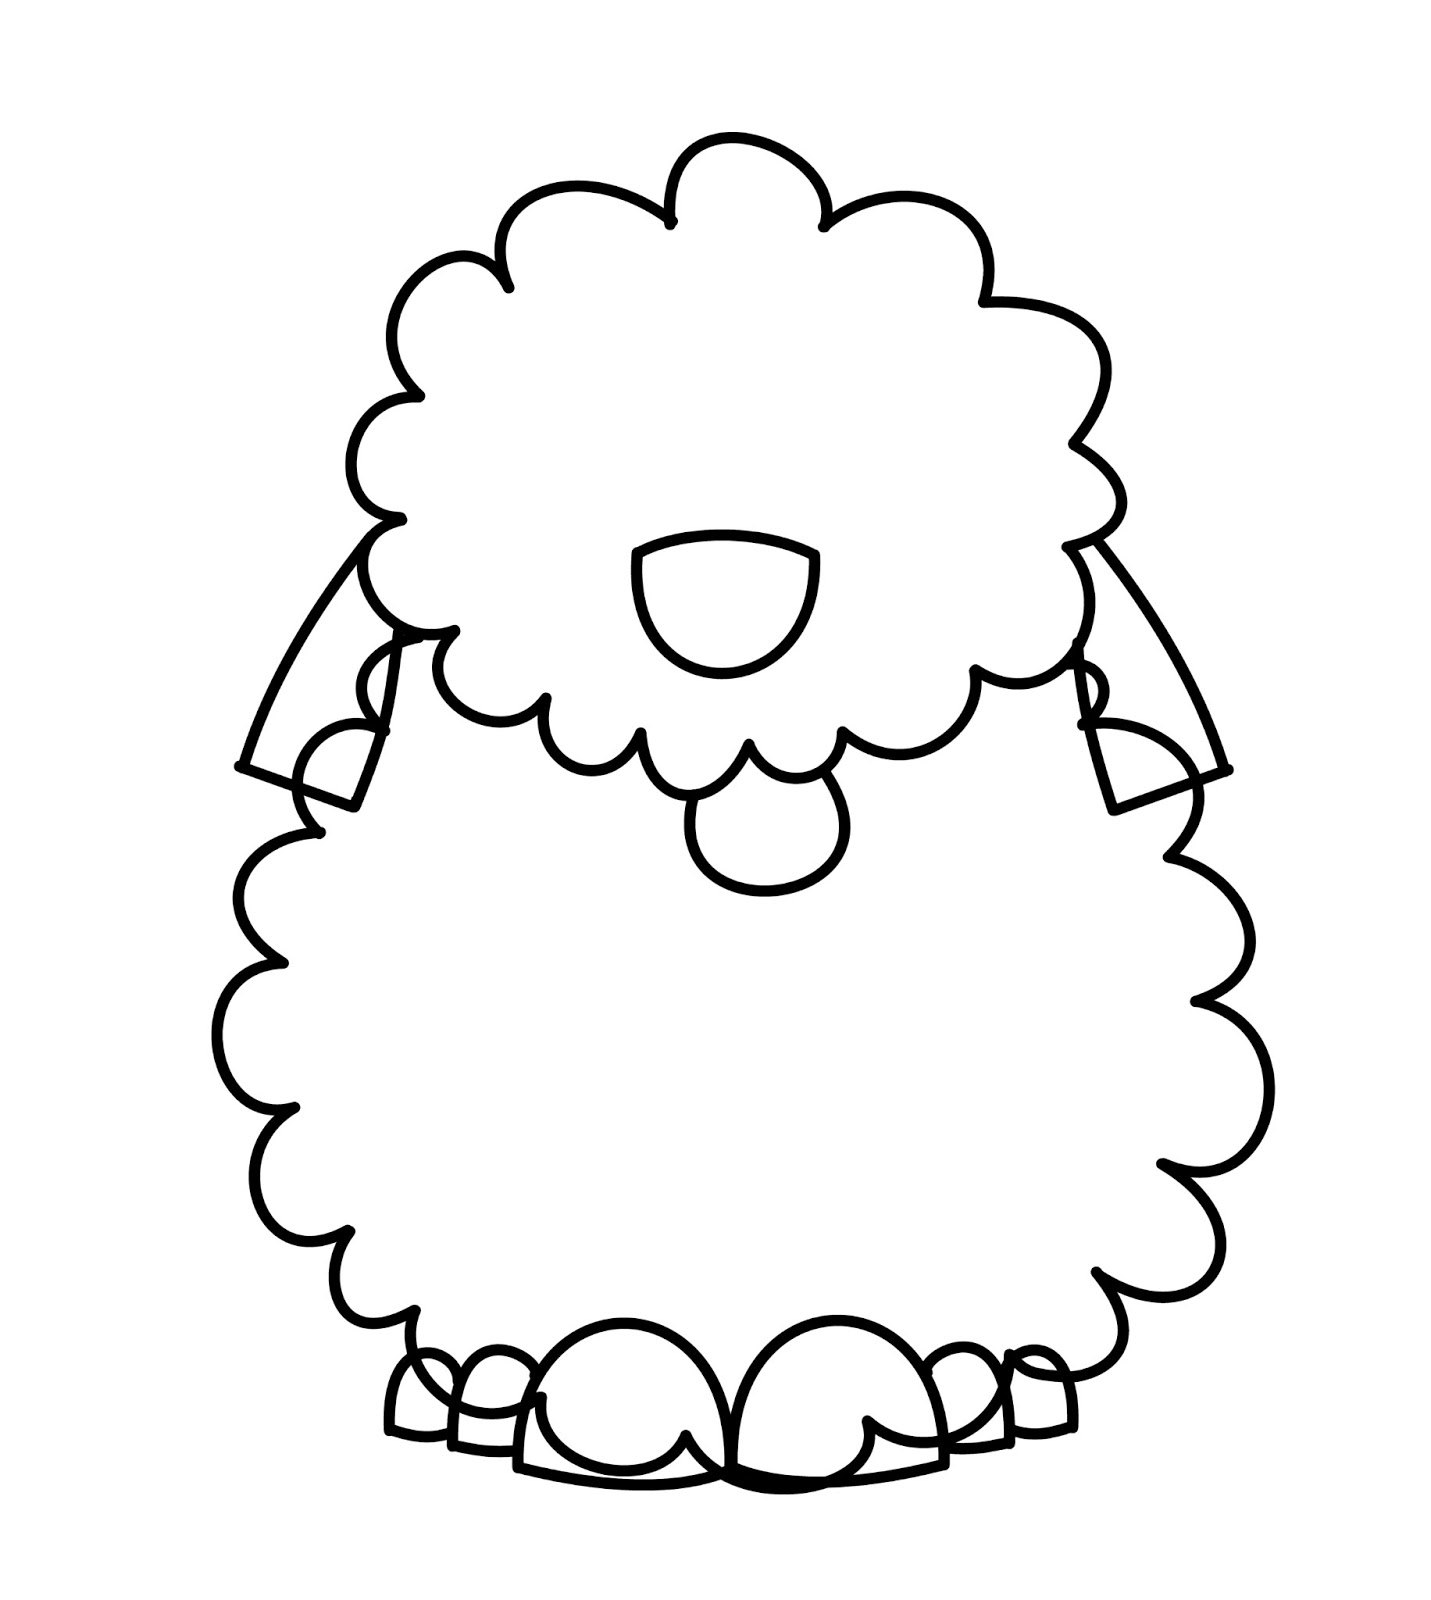 How To Draw Cartoons: Sheep Dog